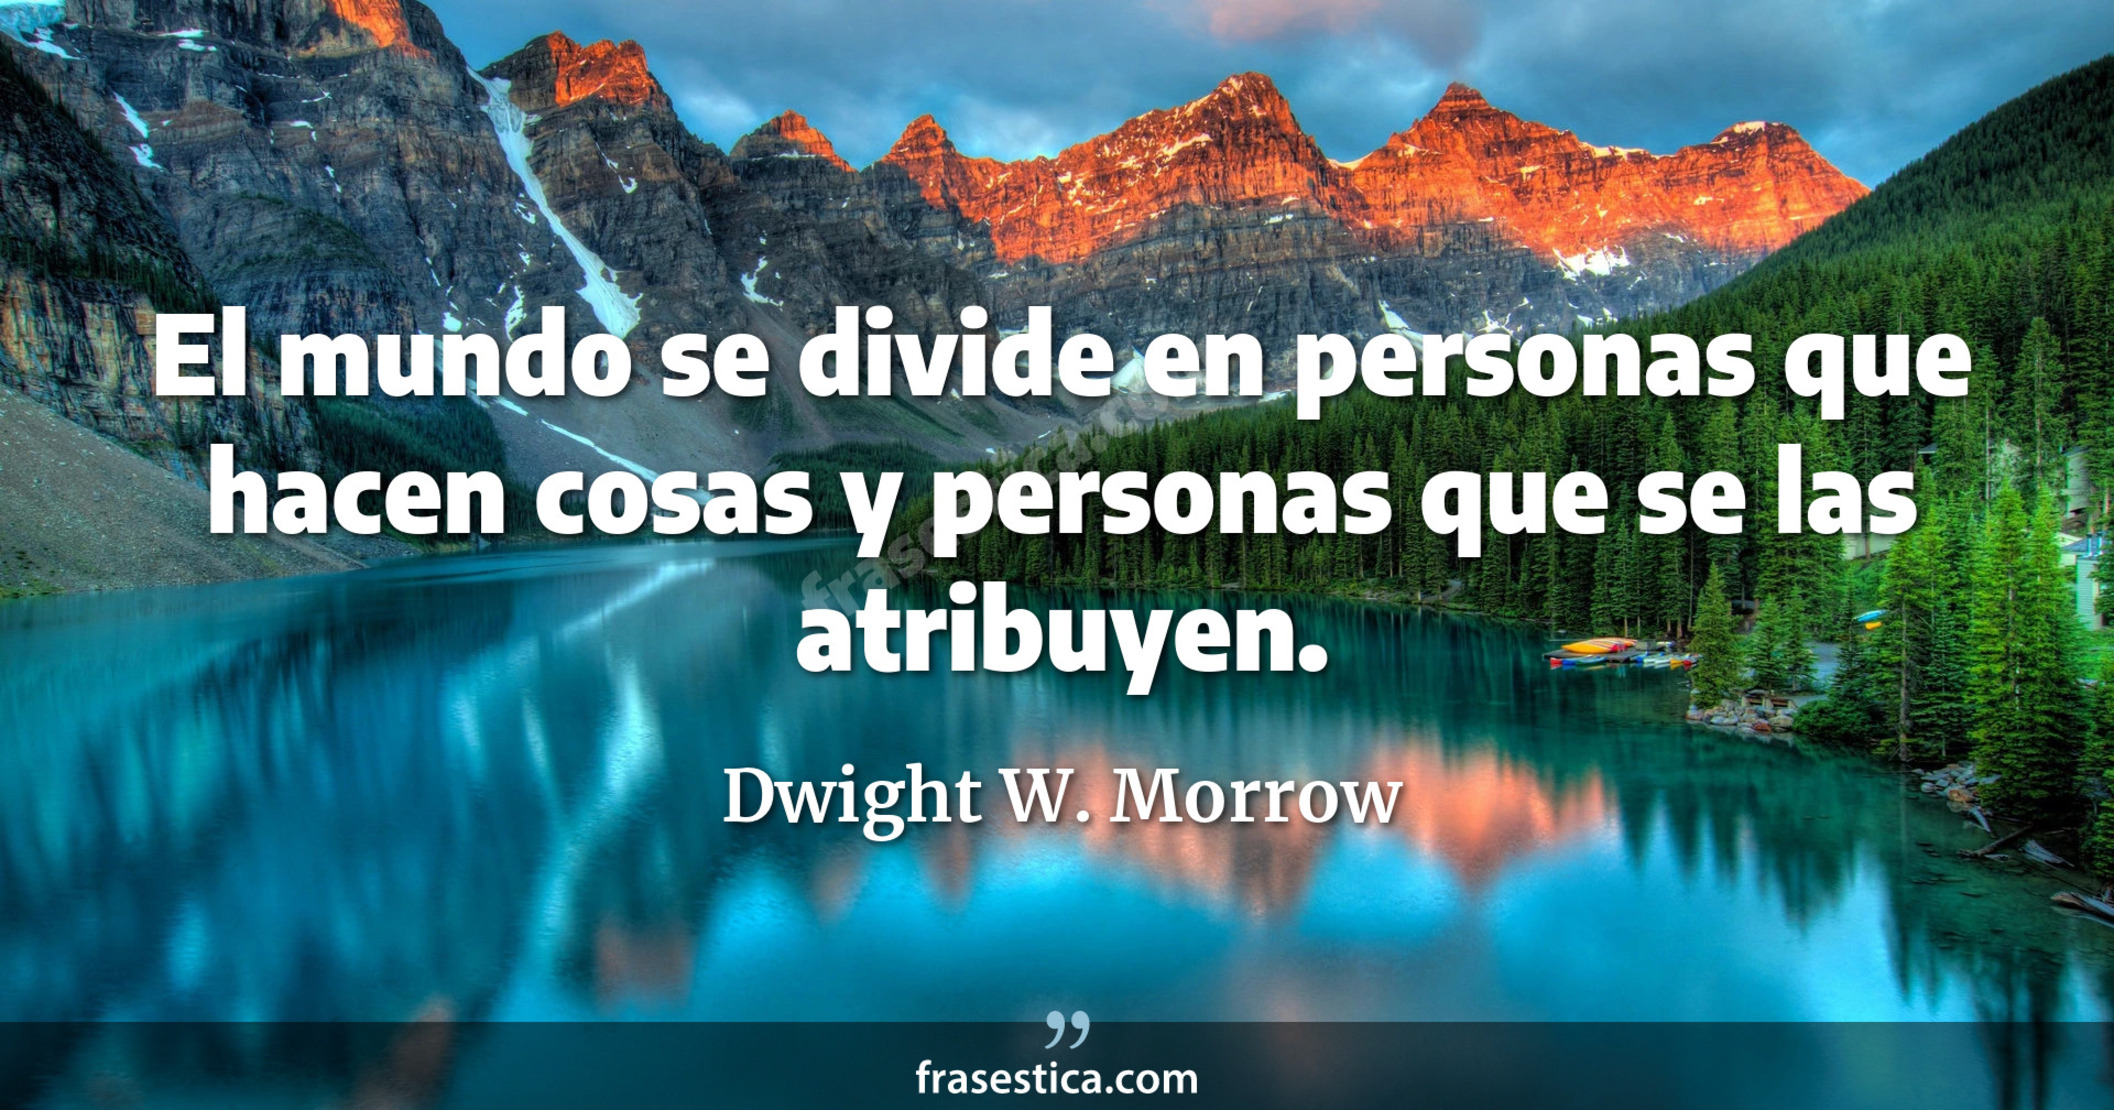 El mundo se divide en personas que hacen cosas y personas que se las atribuyen. - Dwight W. Morrow